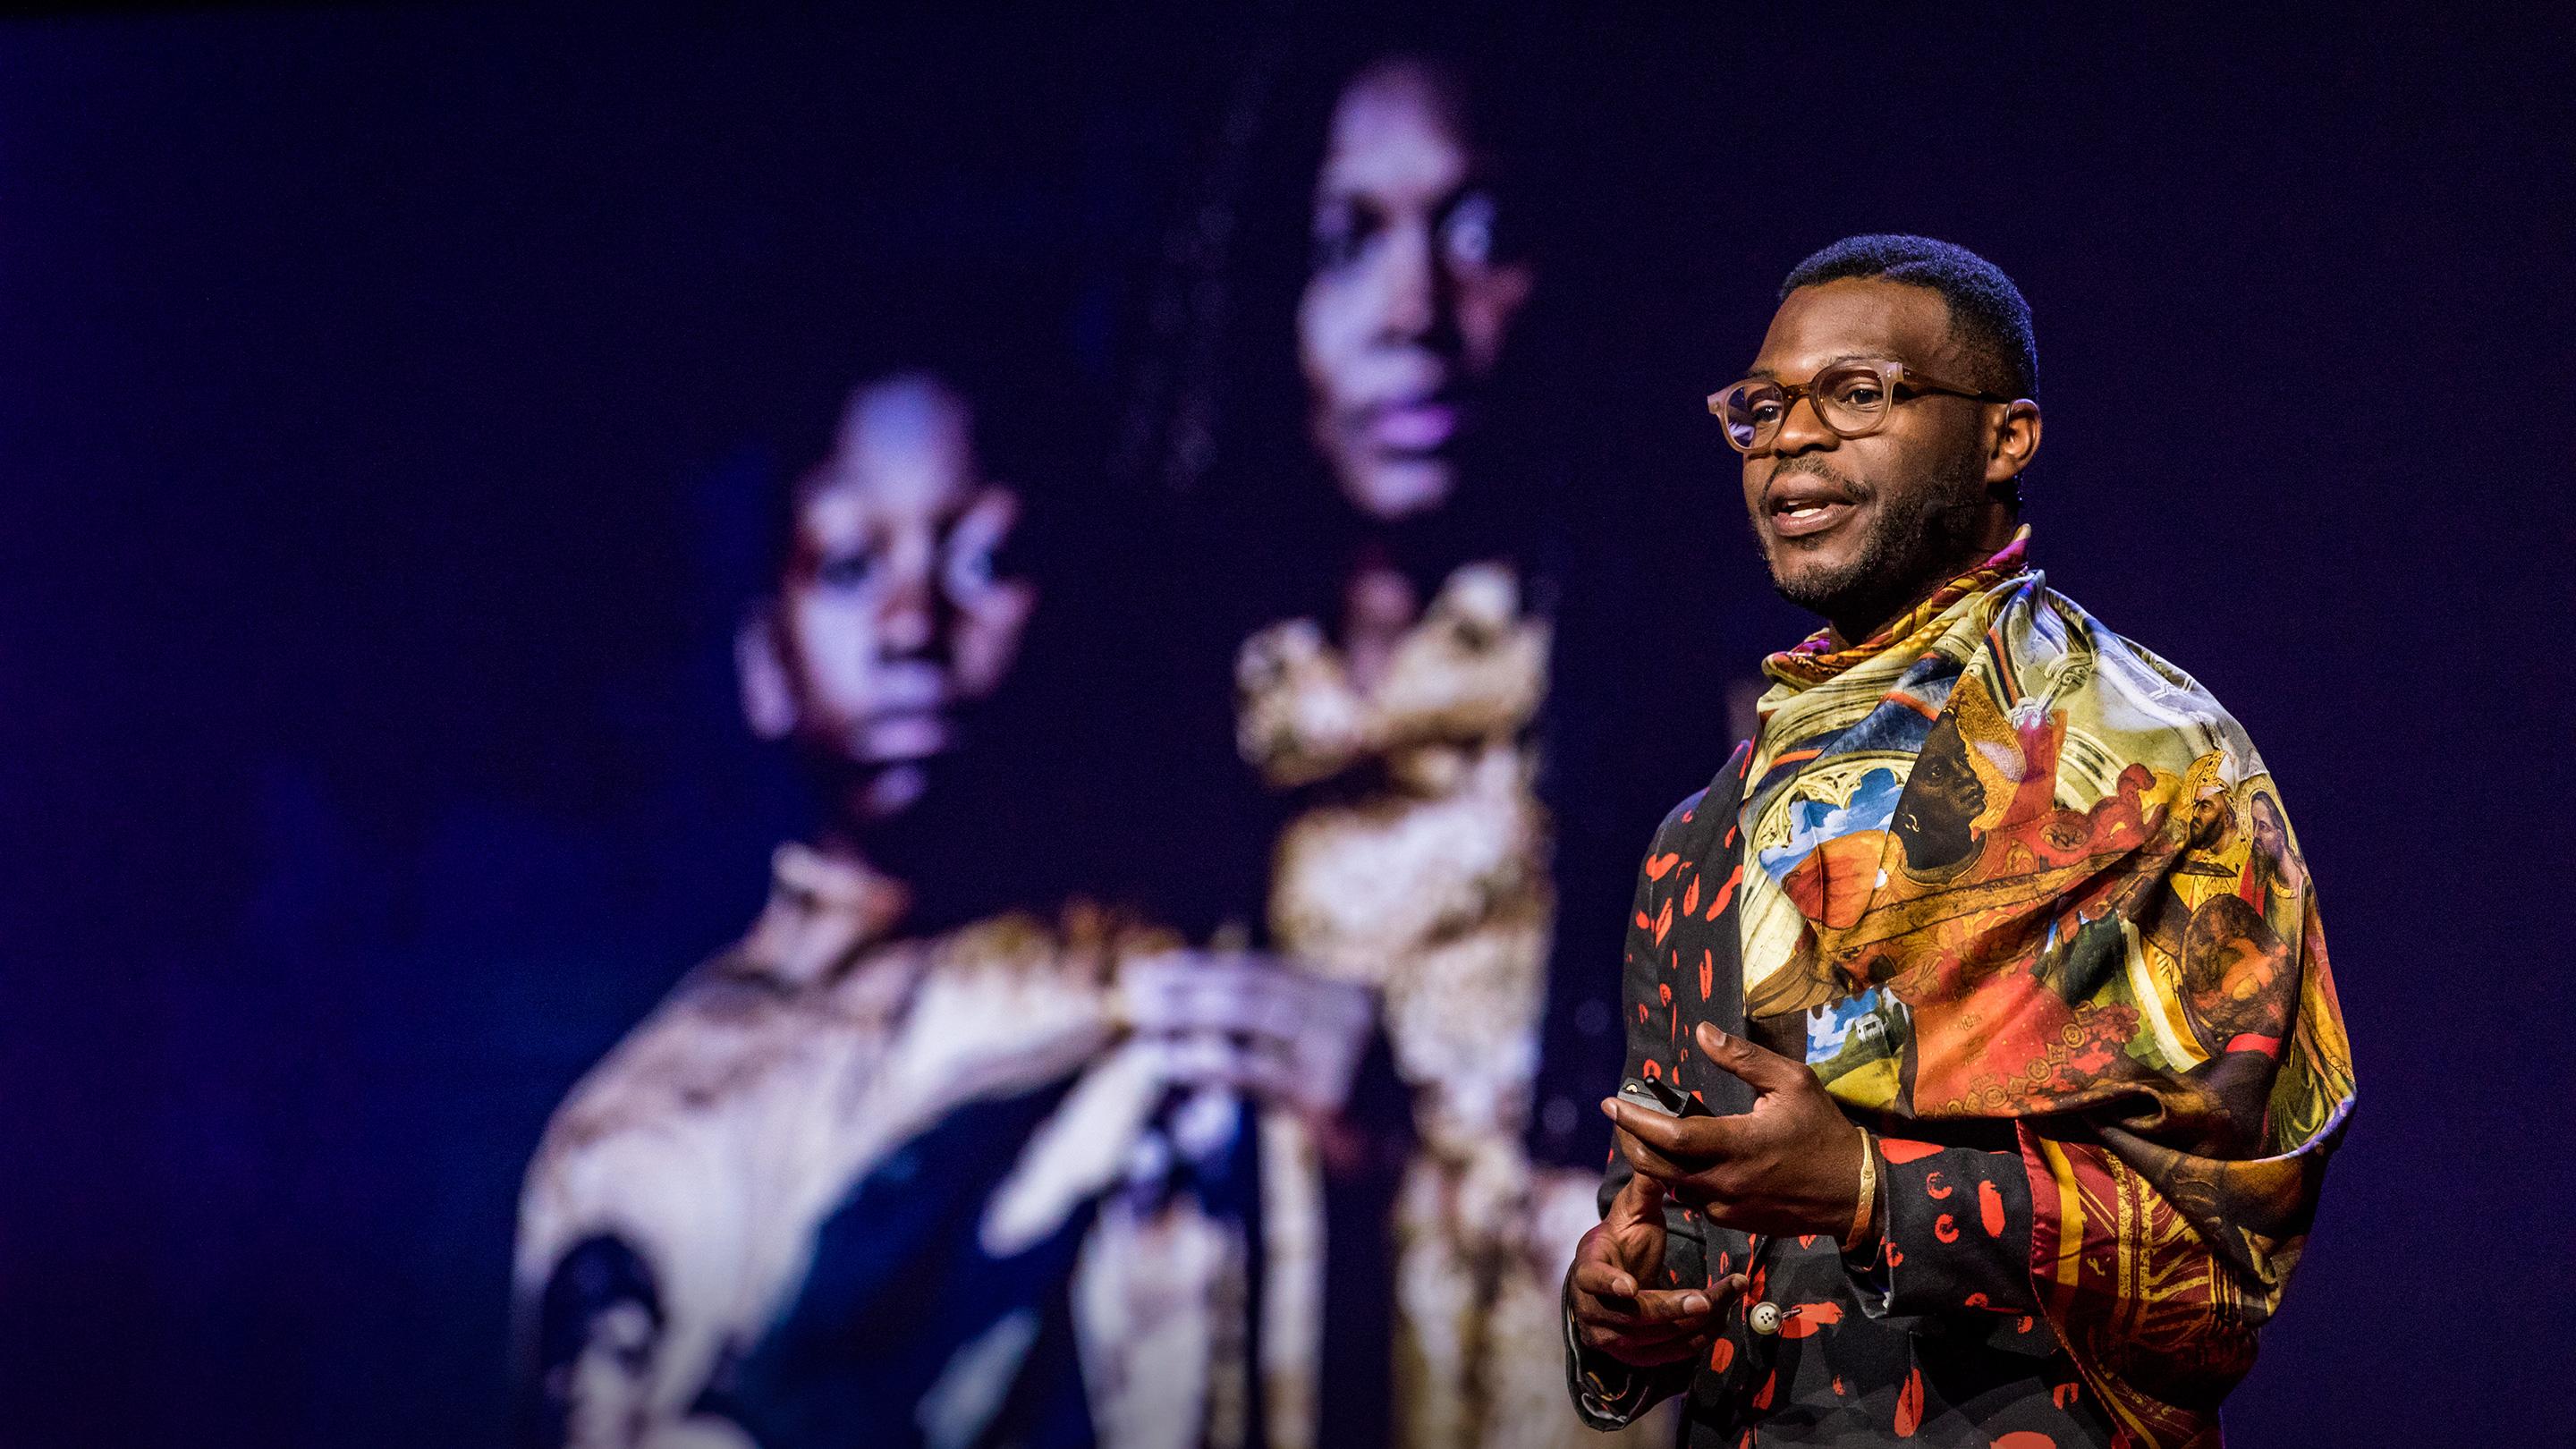 アフリカの力強さと魂を称えるファッション | ワレ・オイェジデ